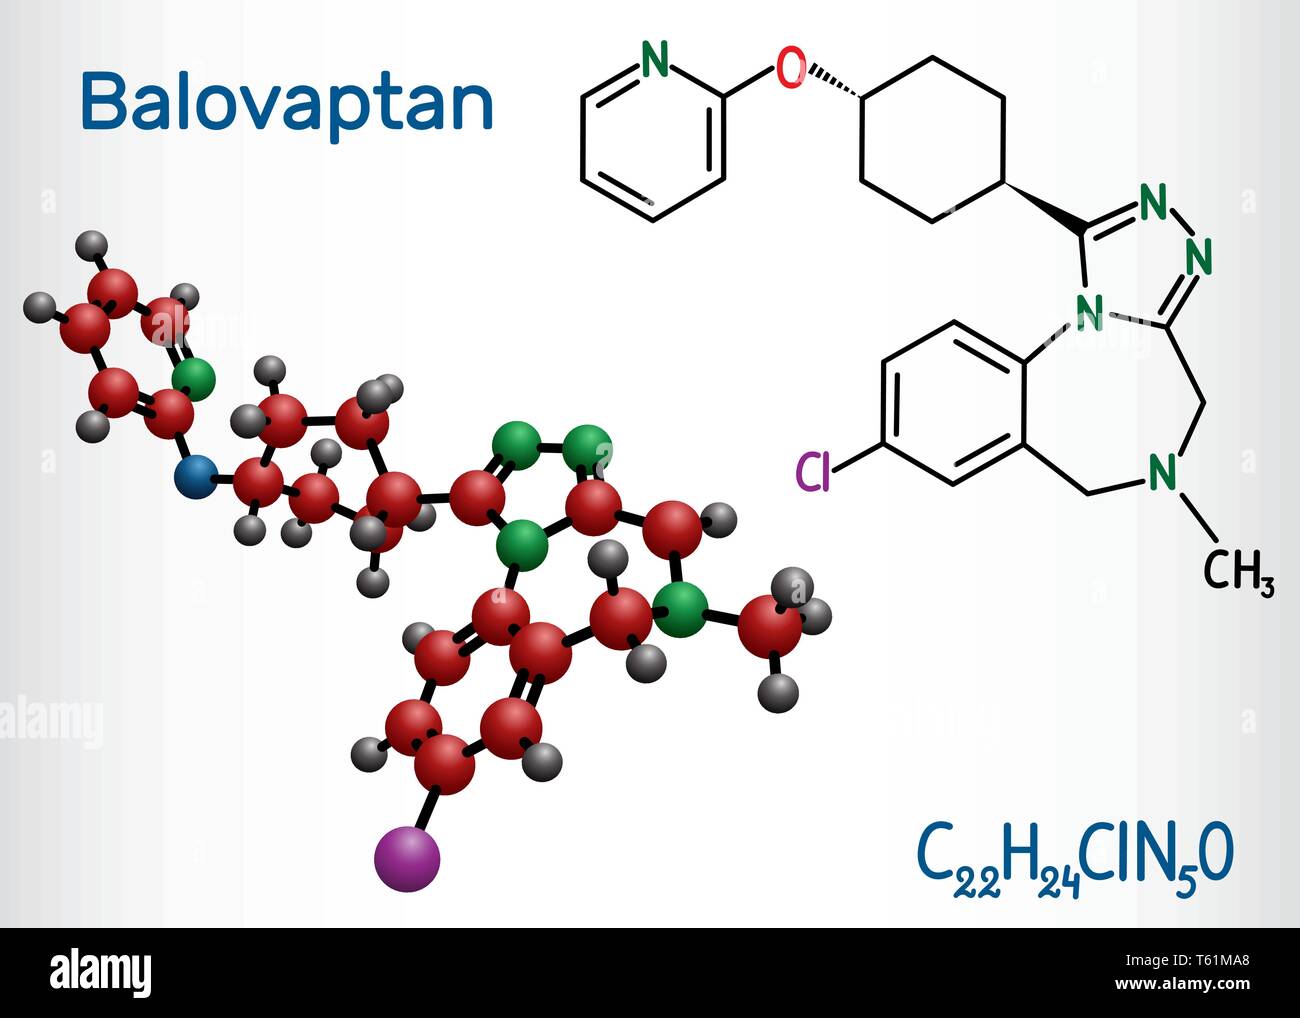 Balovaptan Molekül. Ist Medikament für die Behandlung von Autismus. Strukturelle chemische Formel und Molekül-Modell. Vector Illustration Stock Vektor